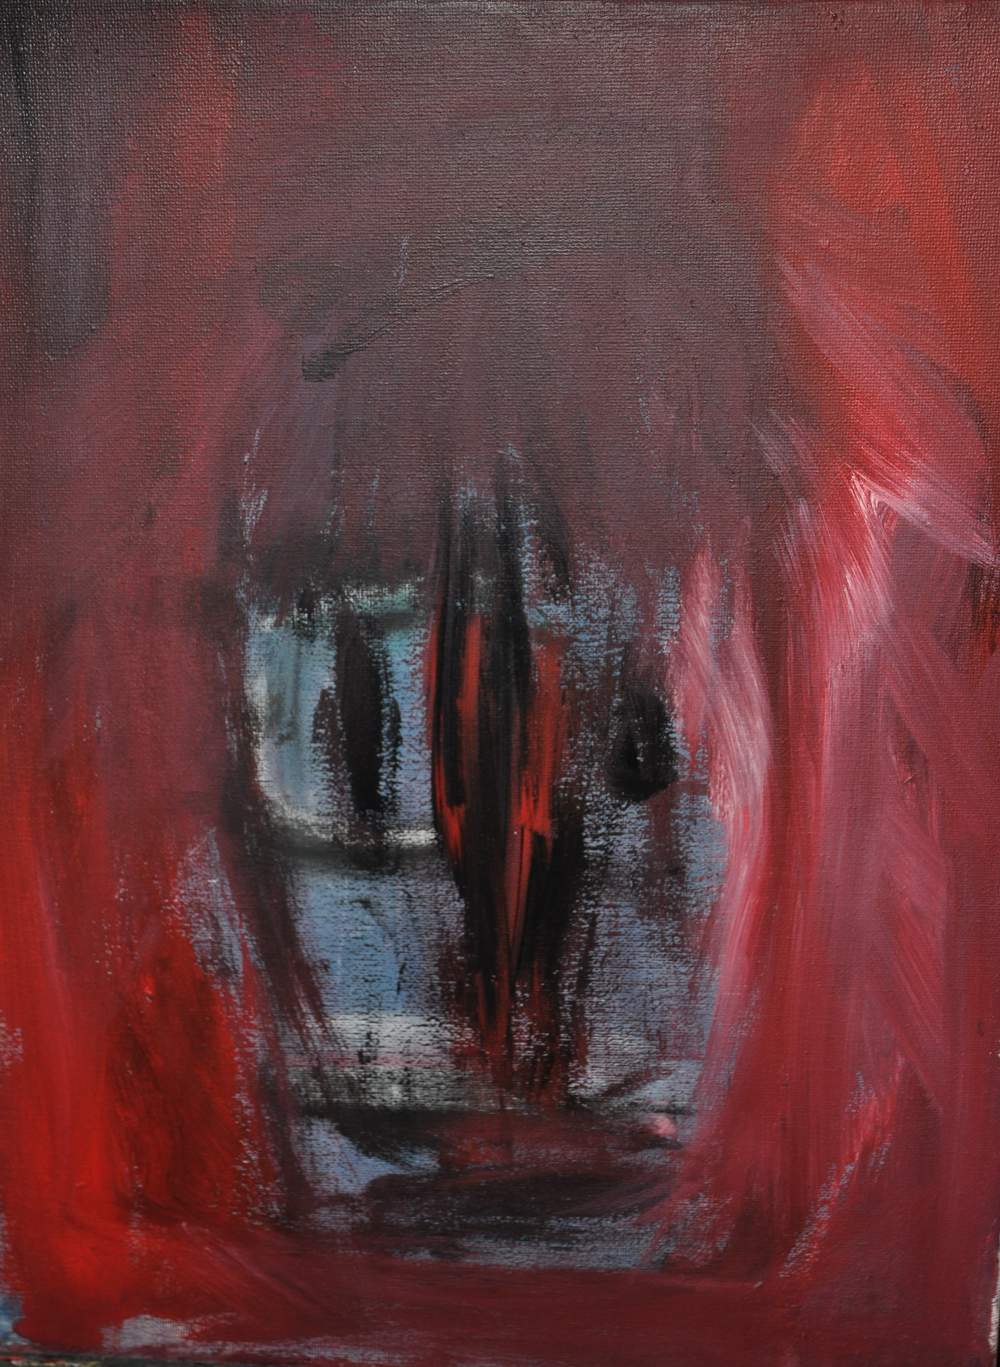 Willi_ Aders-Zimmermann:  Gesicht auf rotem Hintergrund  Acryl auf Leinwand  40x30